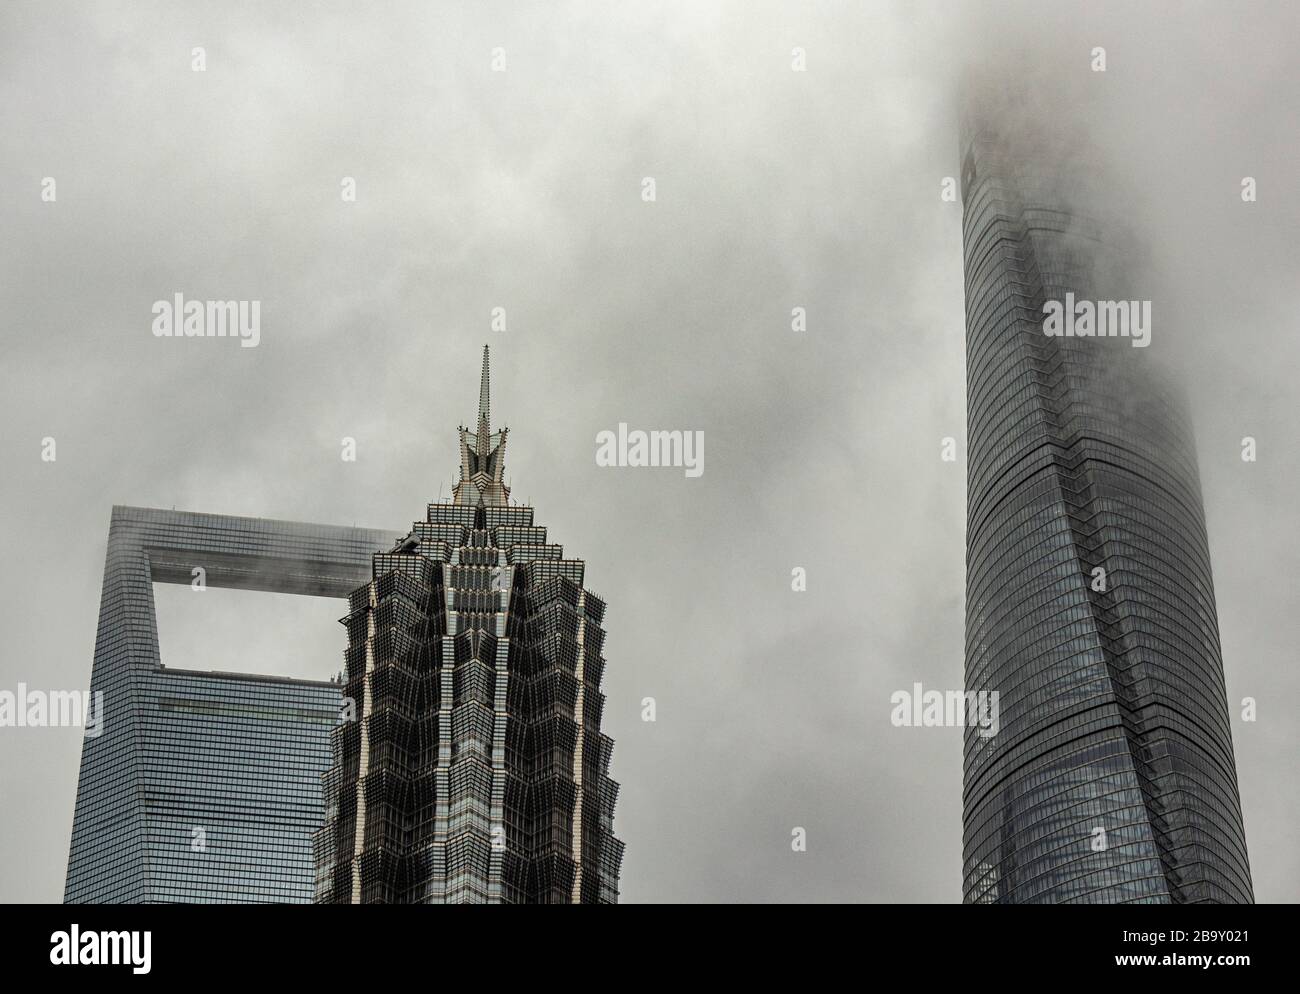 Wolkenkratzer in Shanghai während des Taifuns Lekima, August 2019 Stockfoto